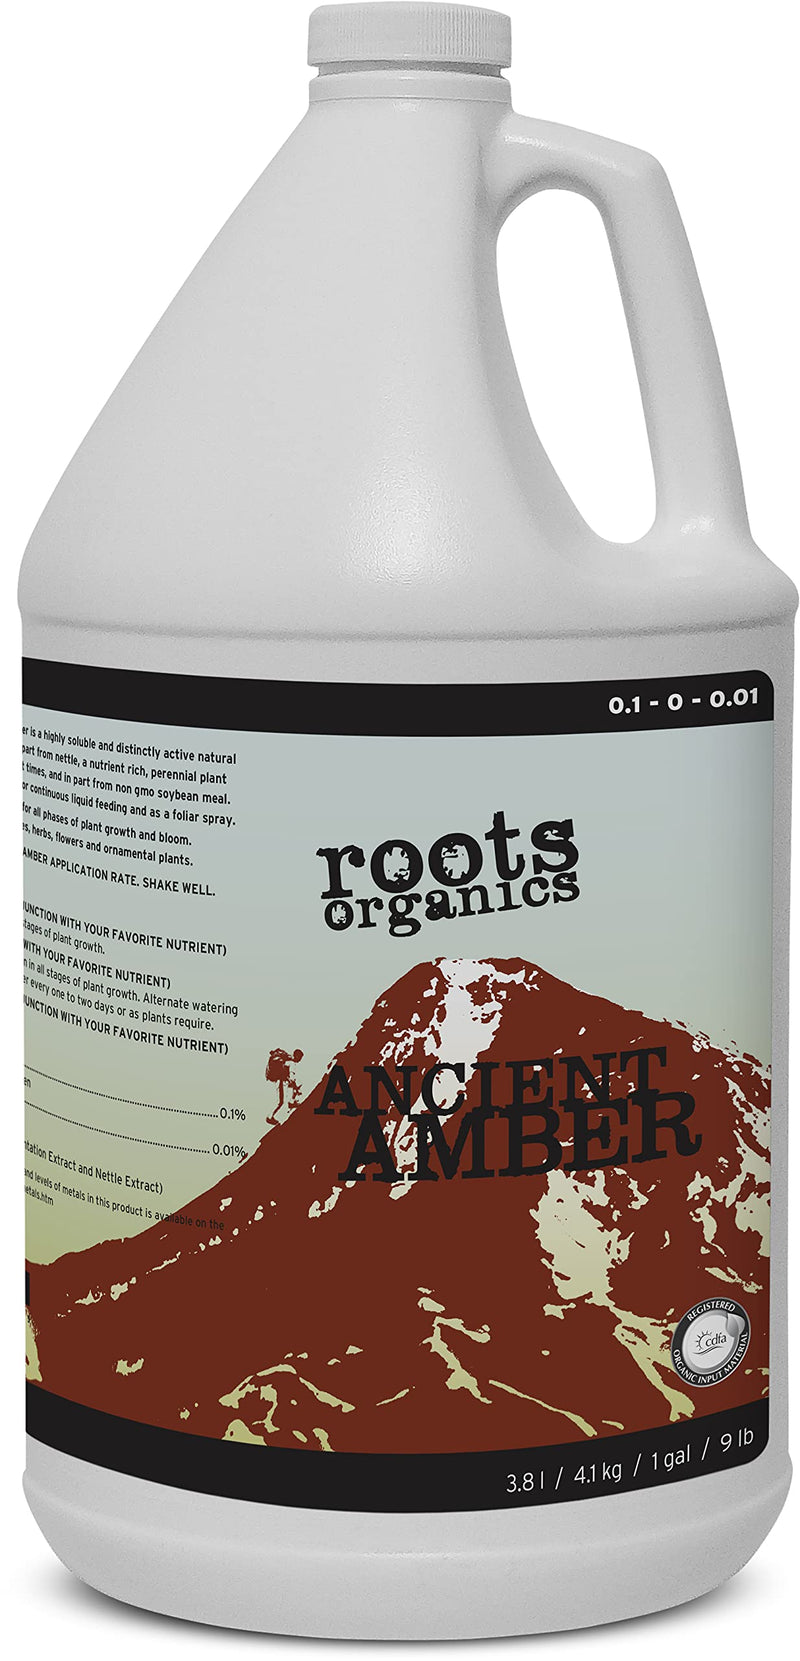 roots organics Ancient Amber, Organic Liquid Fertilizer, 0.1-0-0.01 NPK, 1 Gallon